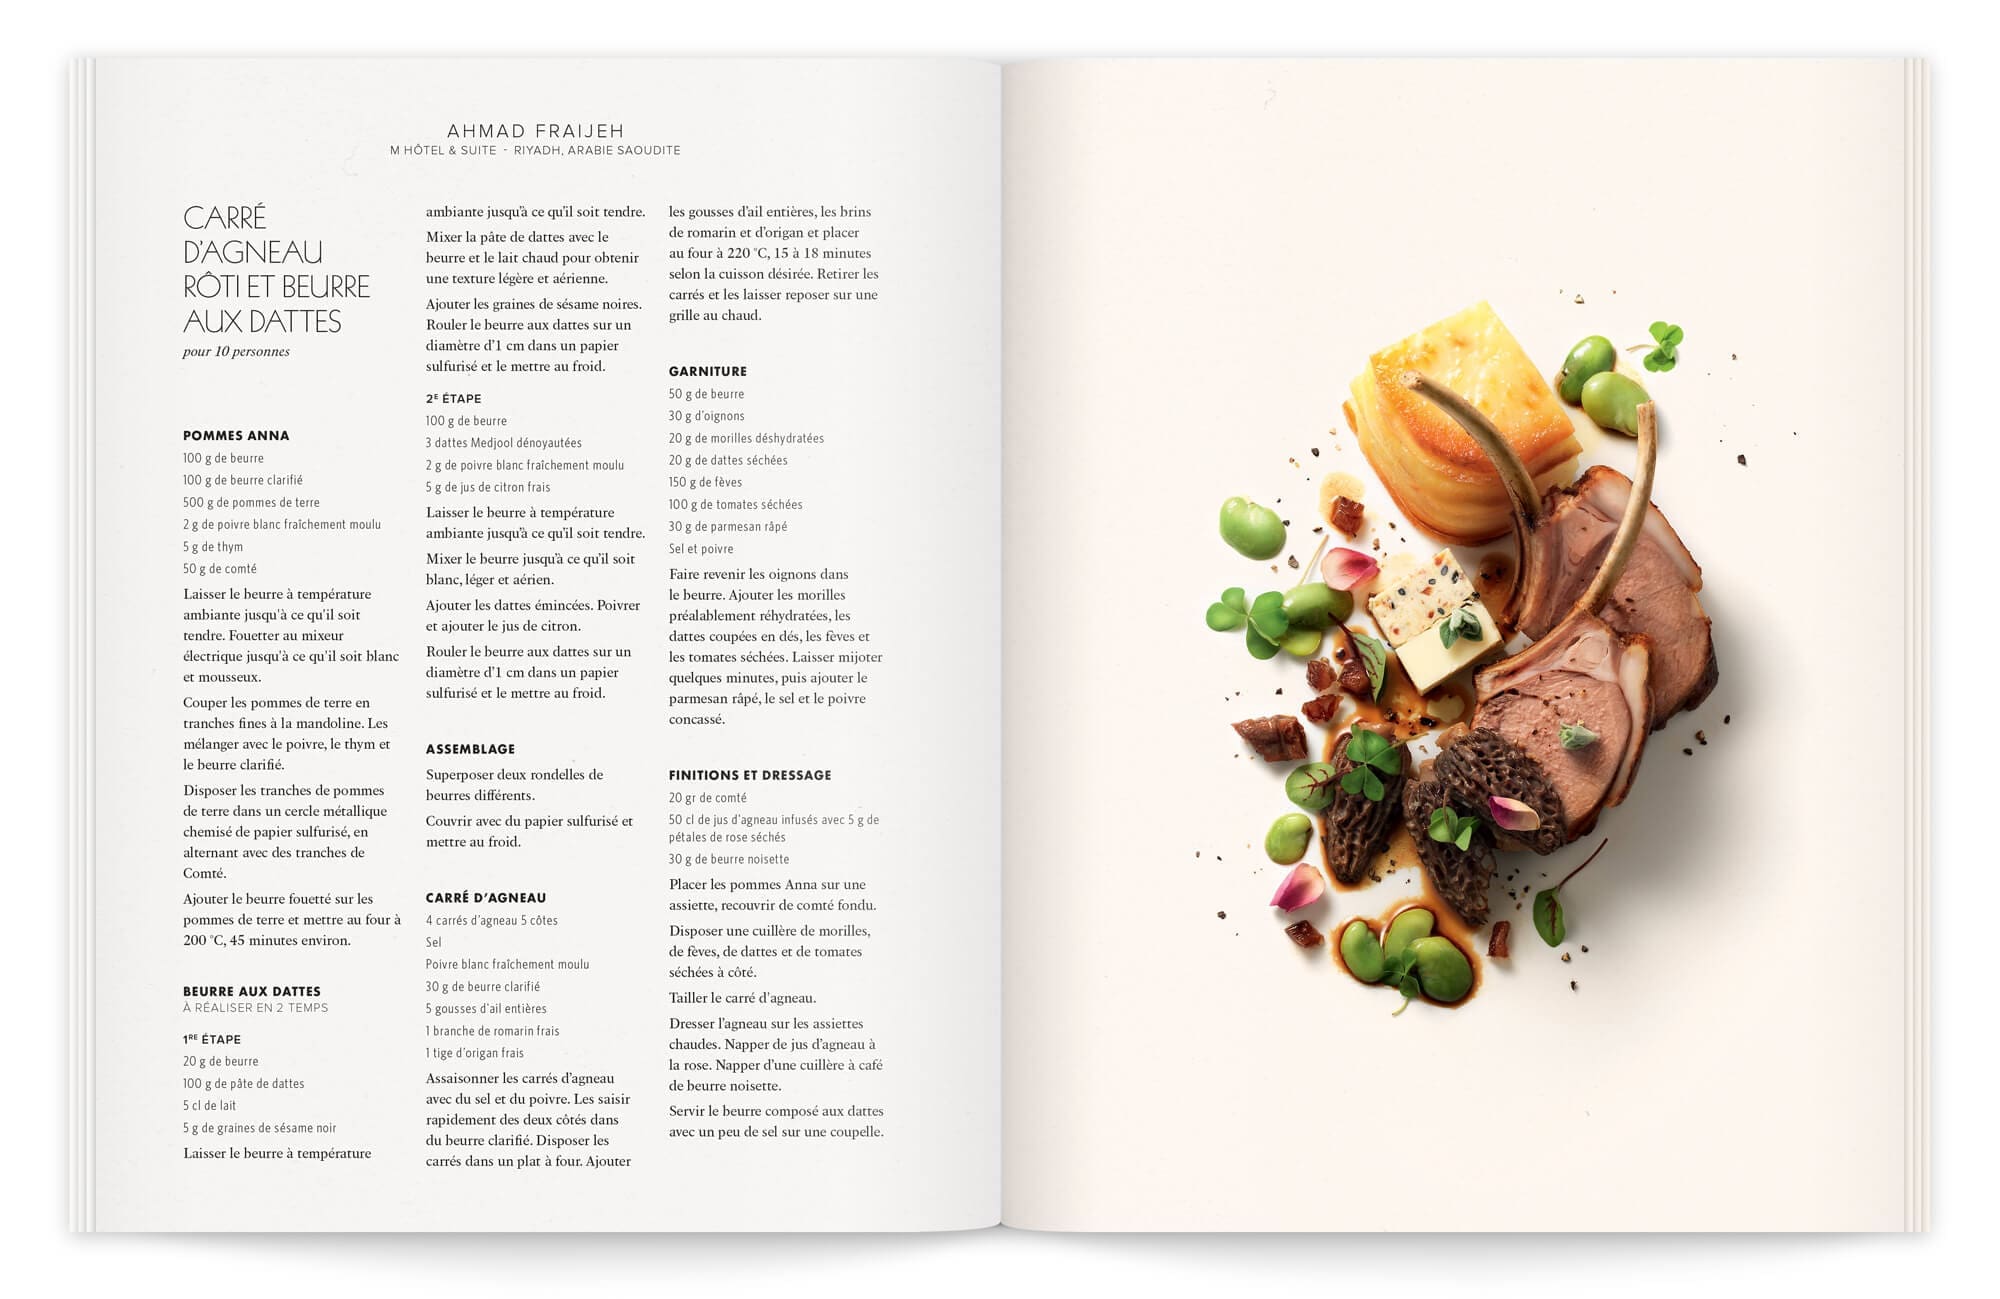 photographie élégante et gastronomique par peter lippmann et stylisme de garlone bardel sous la direction artistique de IchetKar